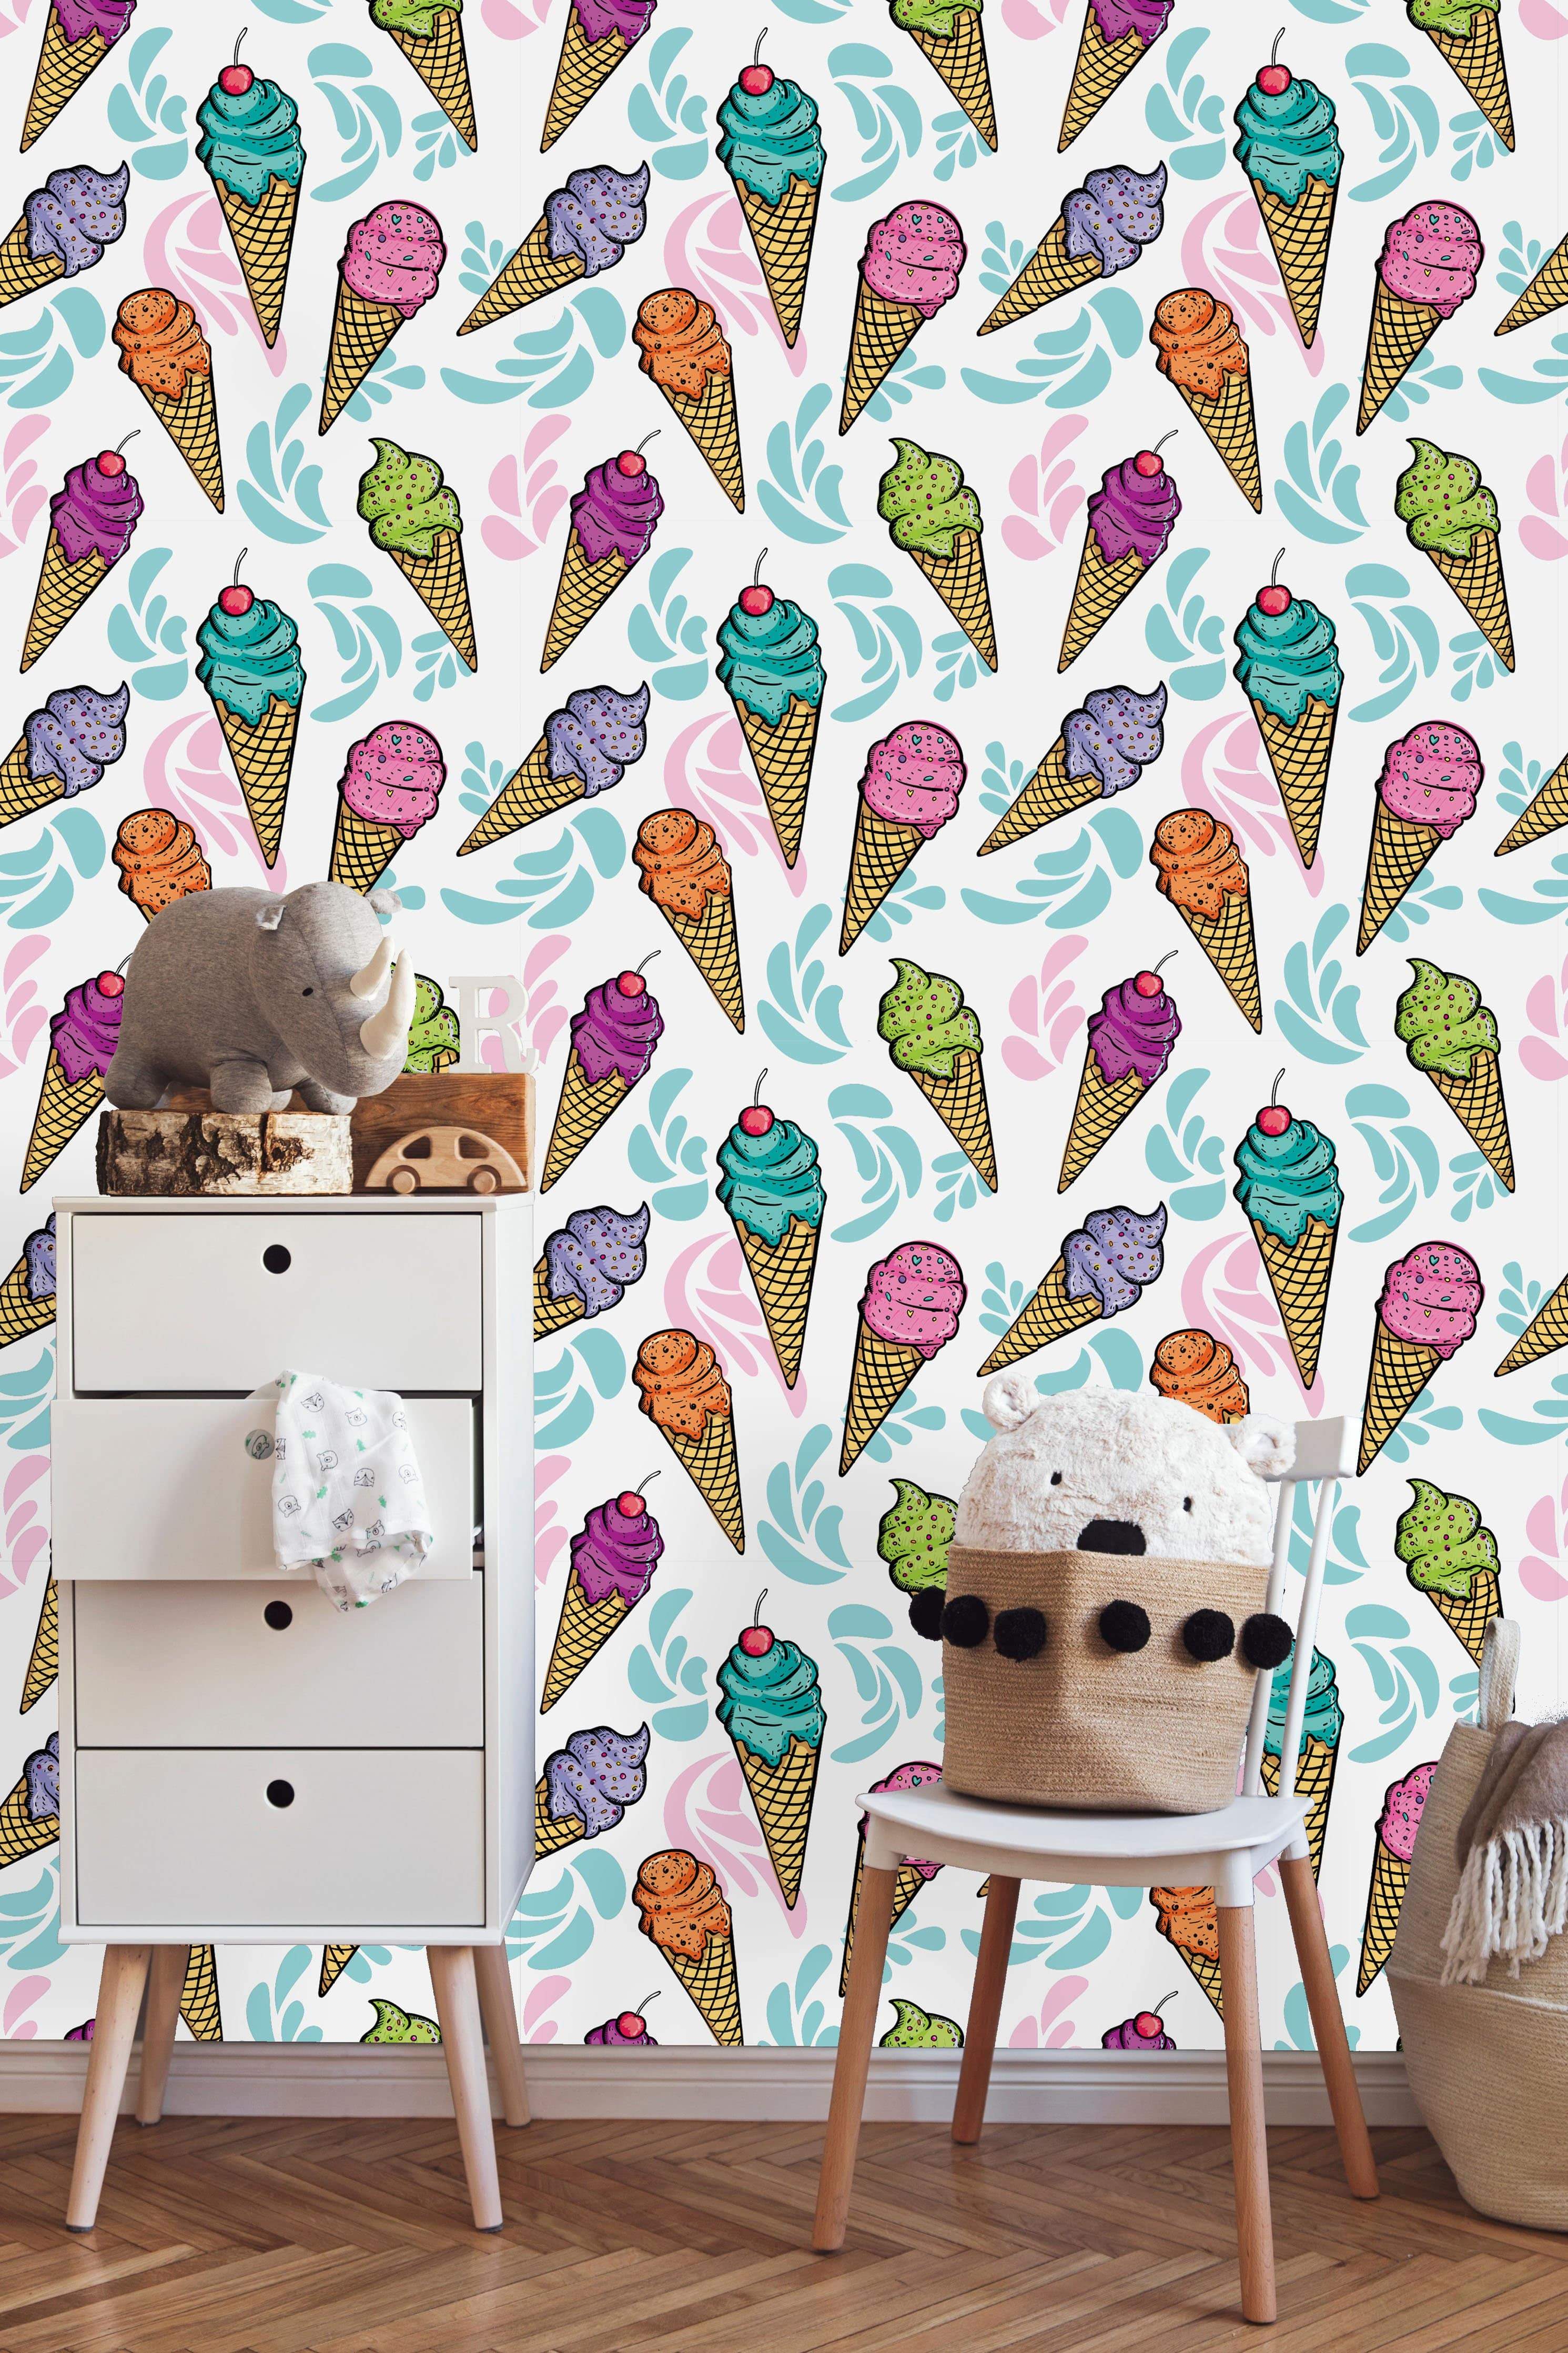 74+] Ice Cream Wallpaper - WallpaperSafari